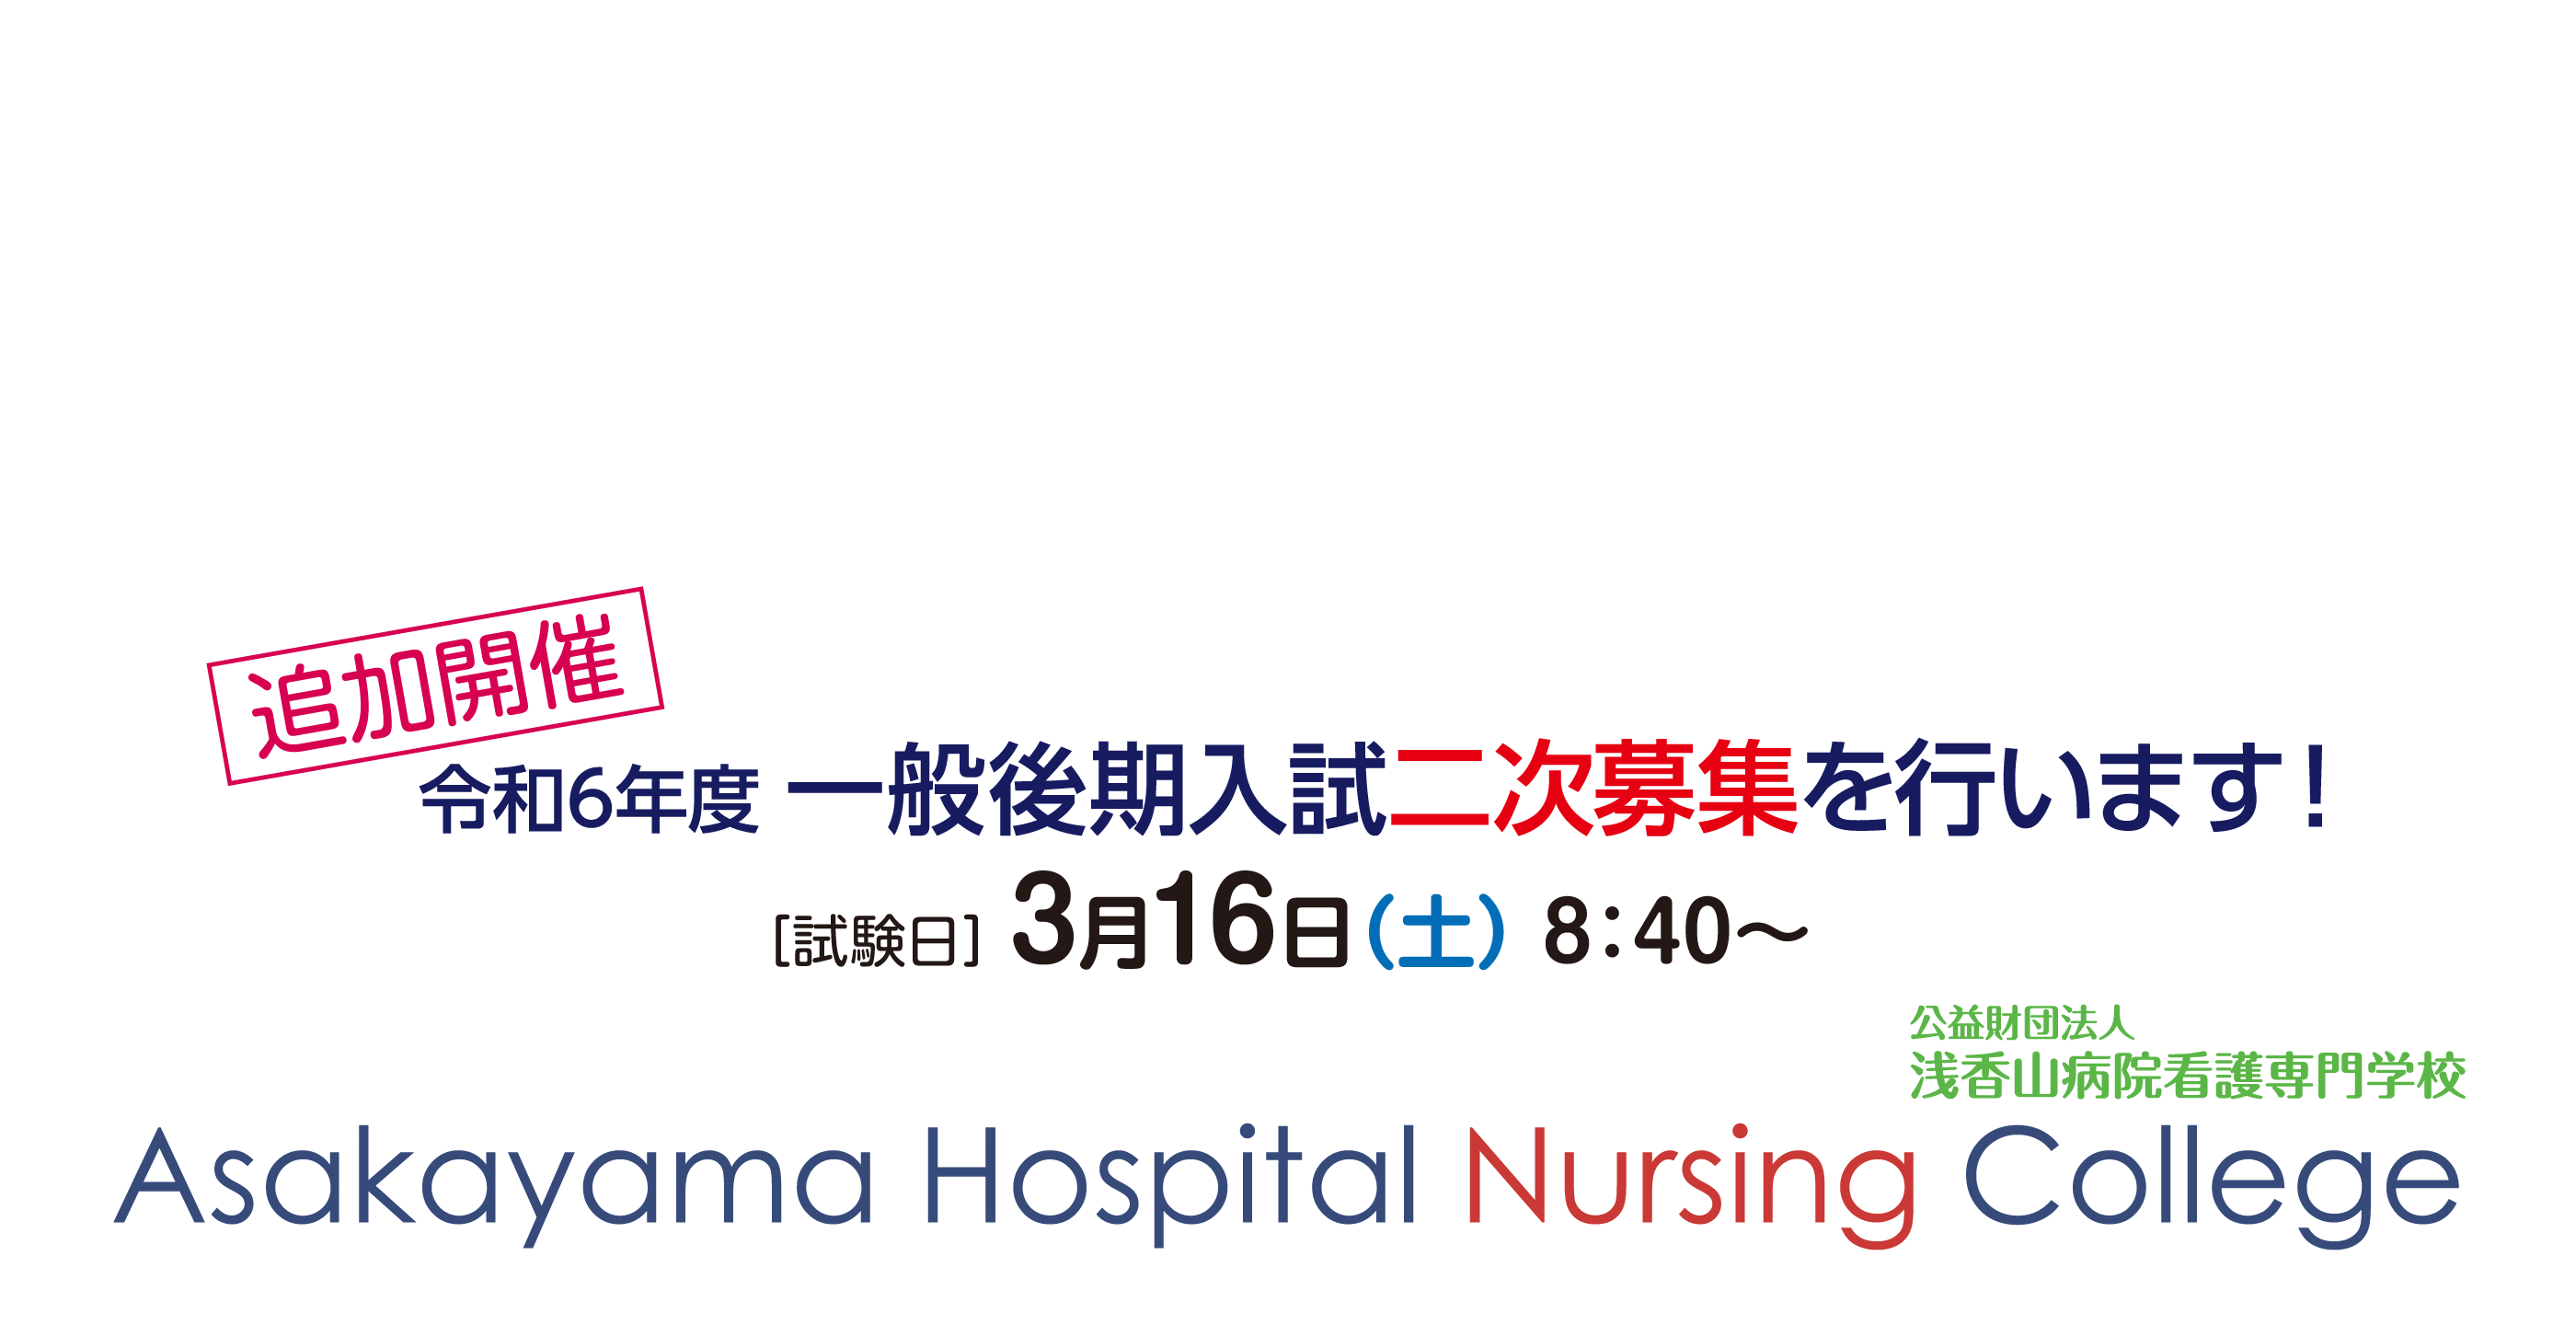 Asakayama Hospital Nursing College